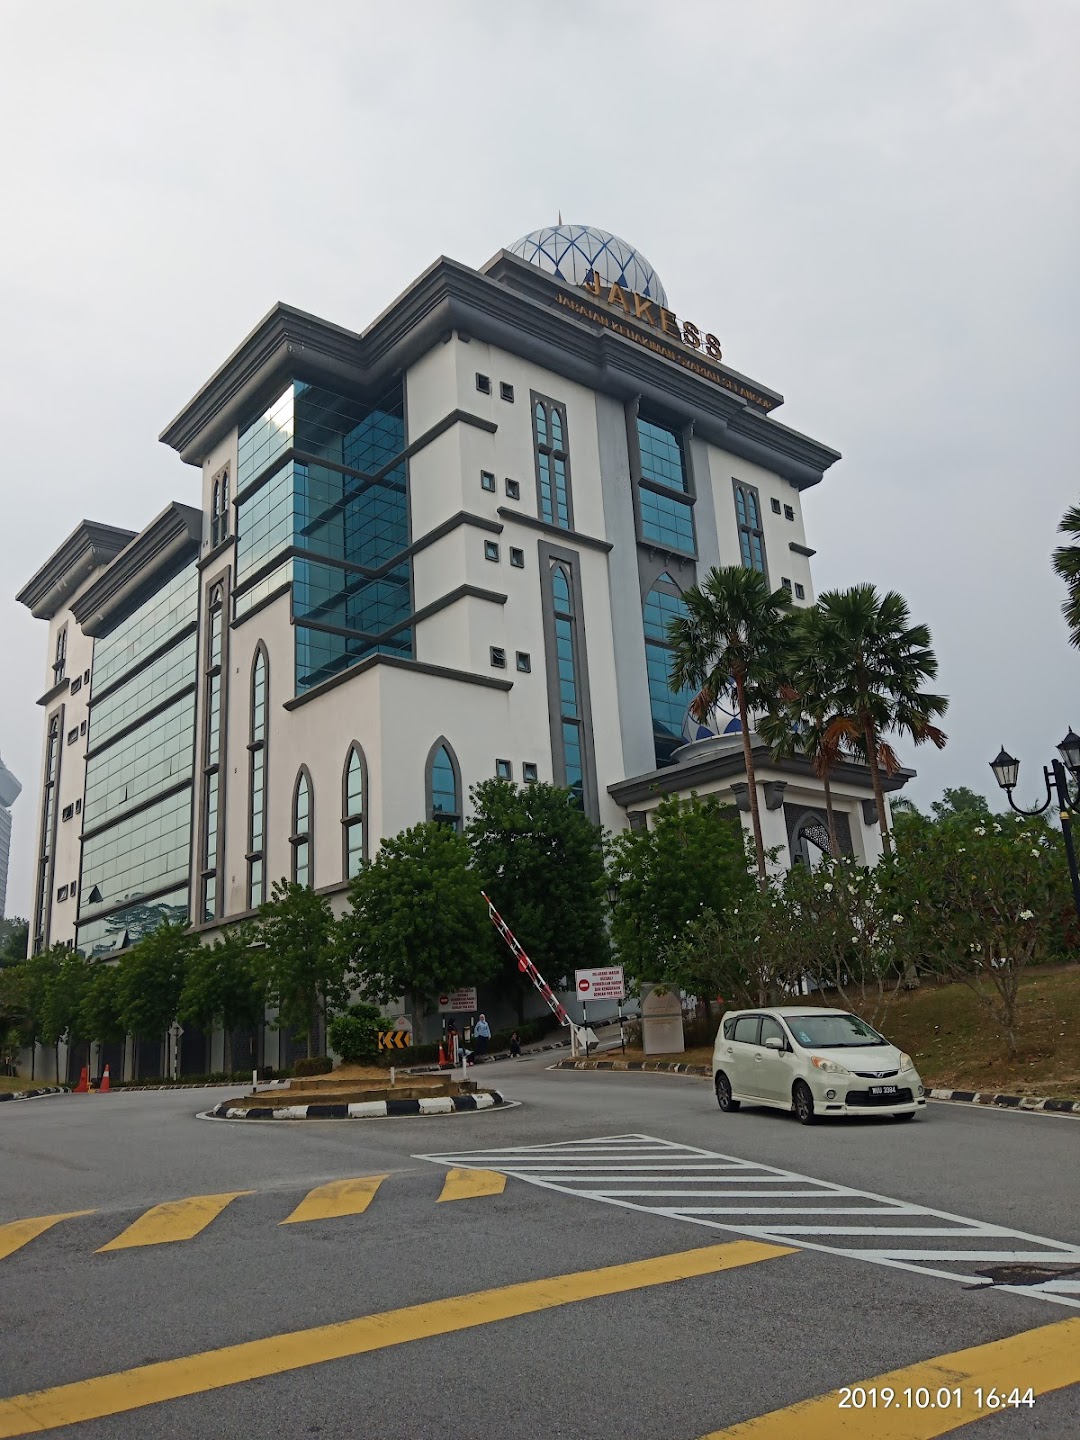 Mahkamah Tinggi Syariah Selangor Di Bandar Shah Alam